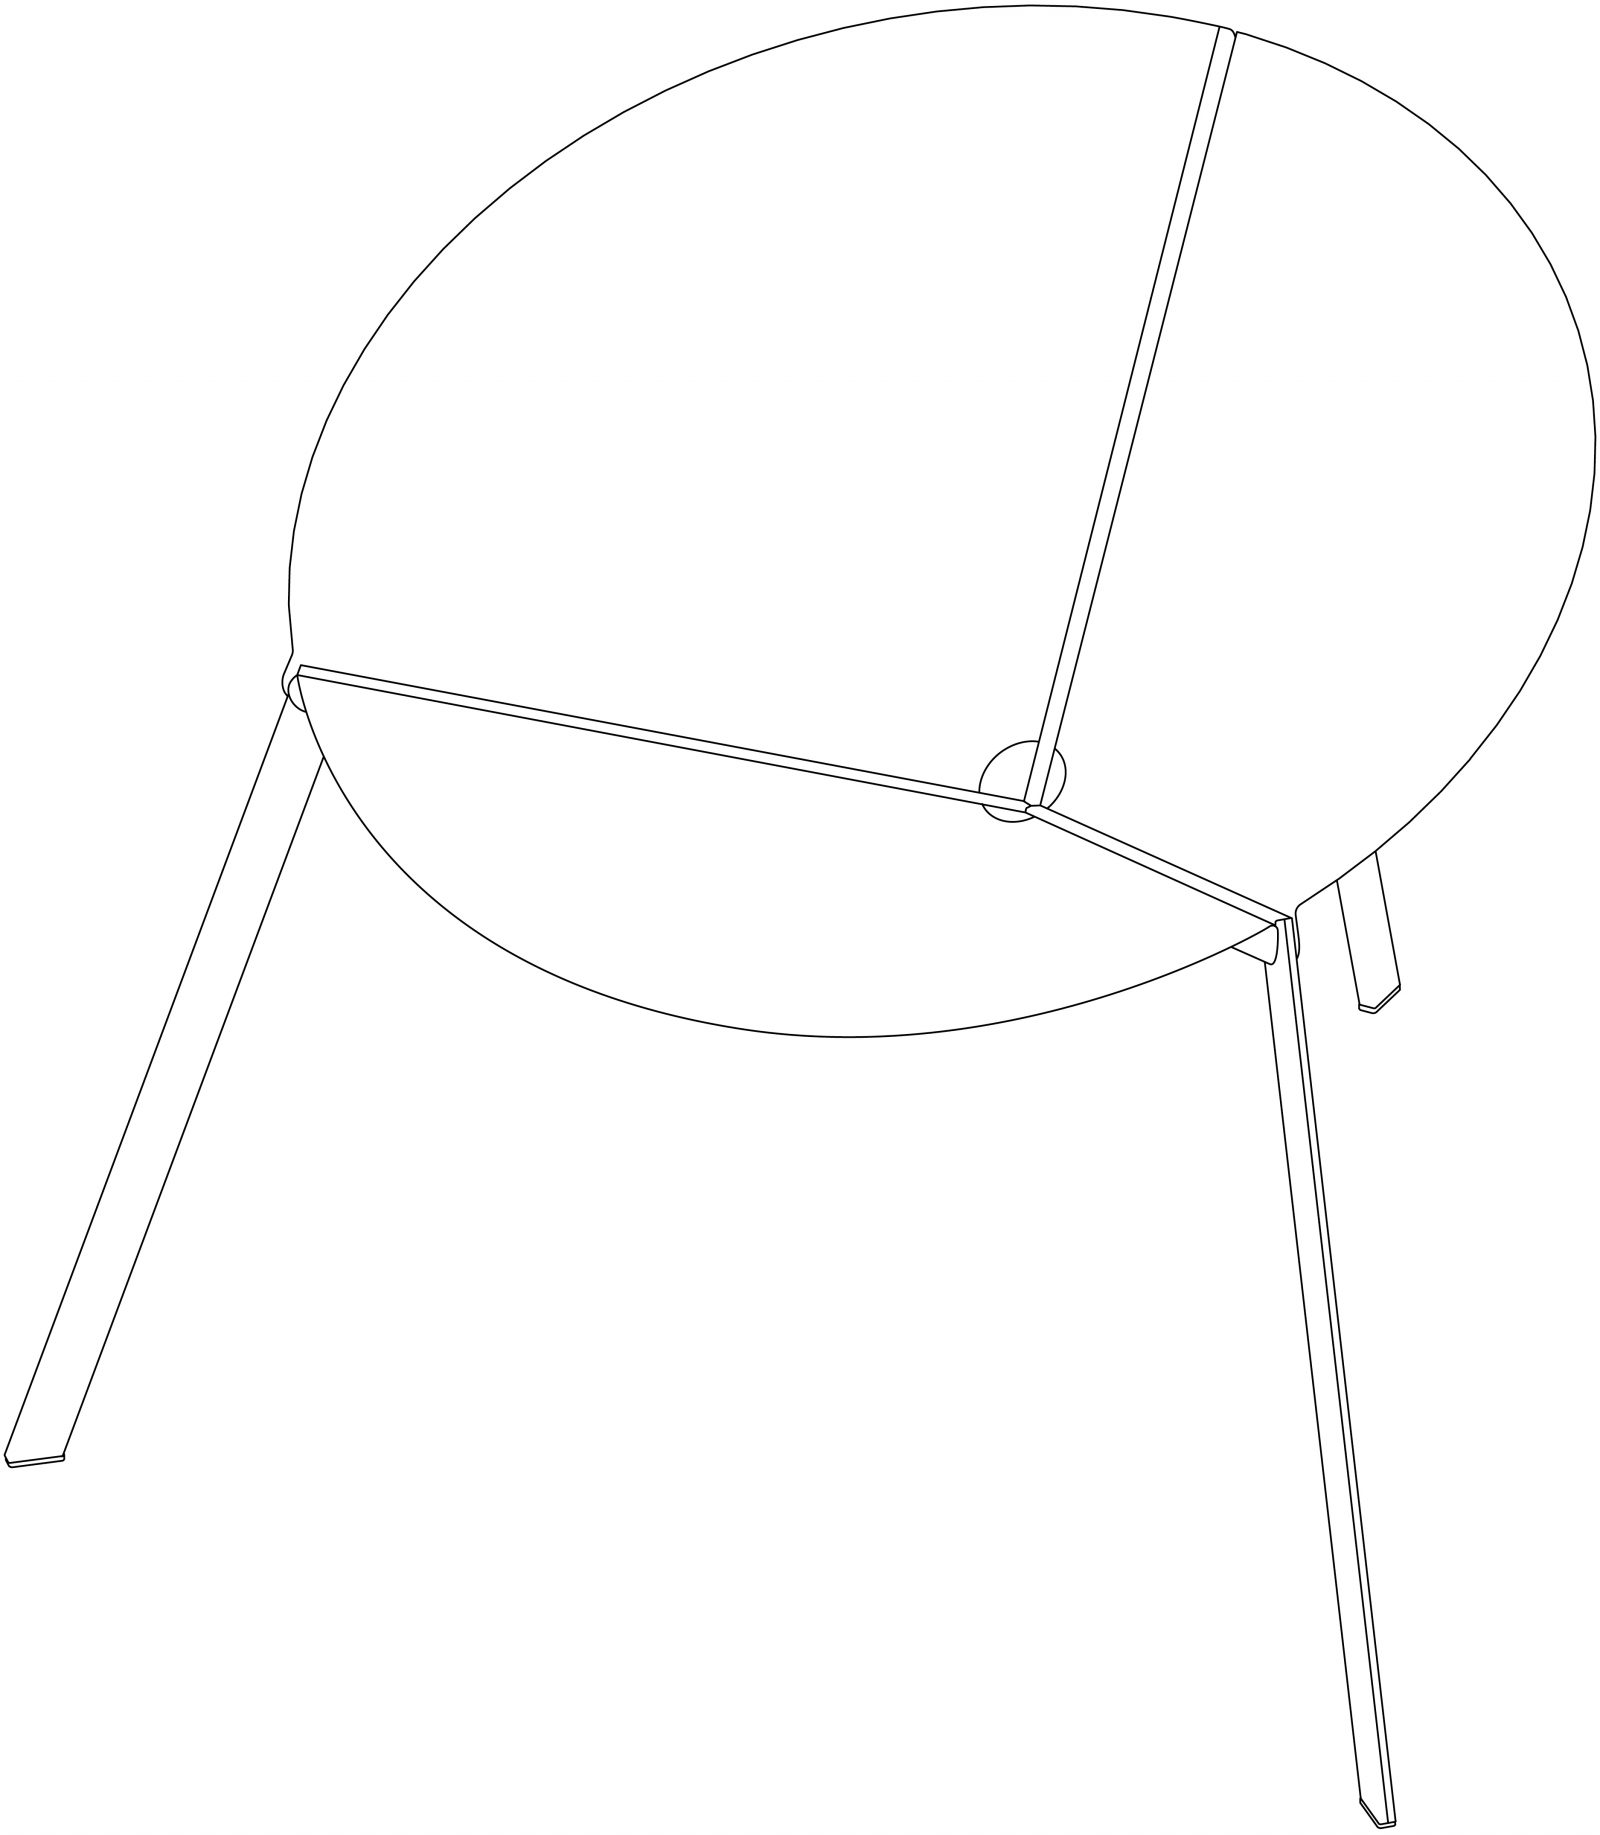 意大利家具DE CASTELLI的PENSANDO AD ACAPULCO 休闲椅 细节图